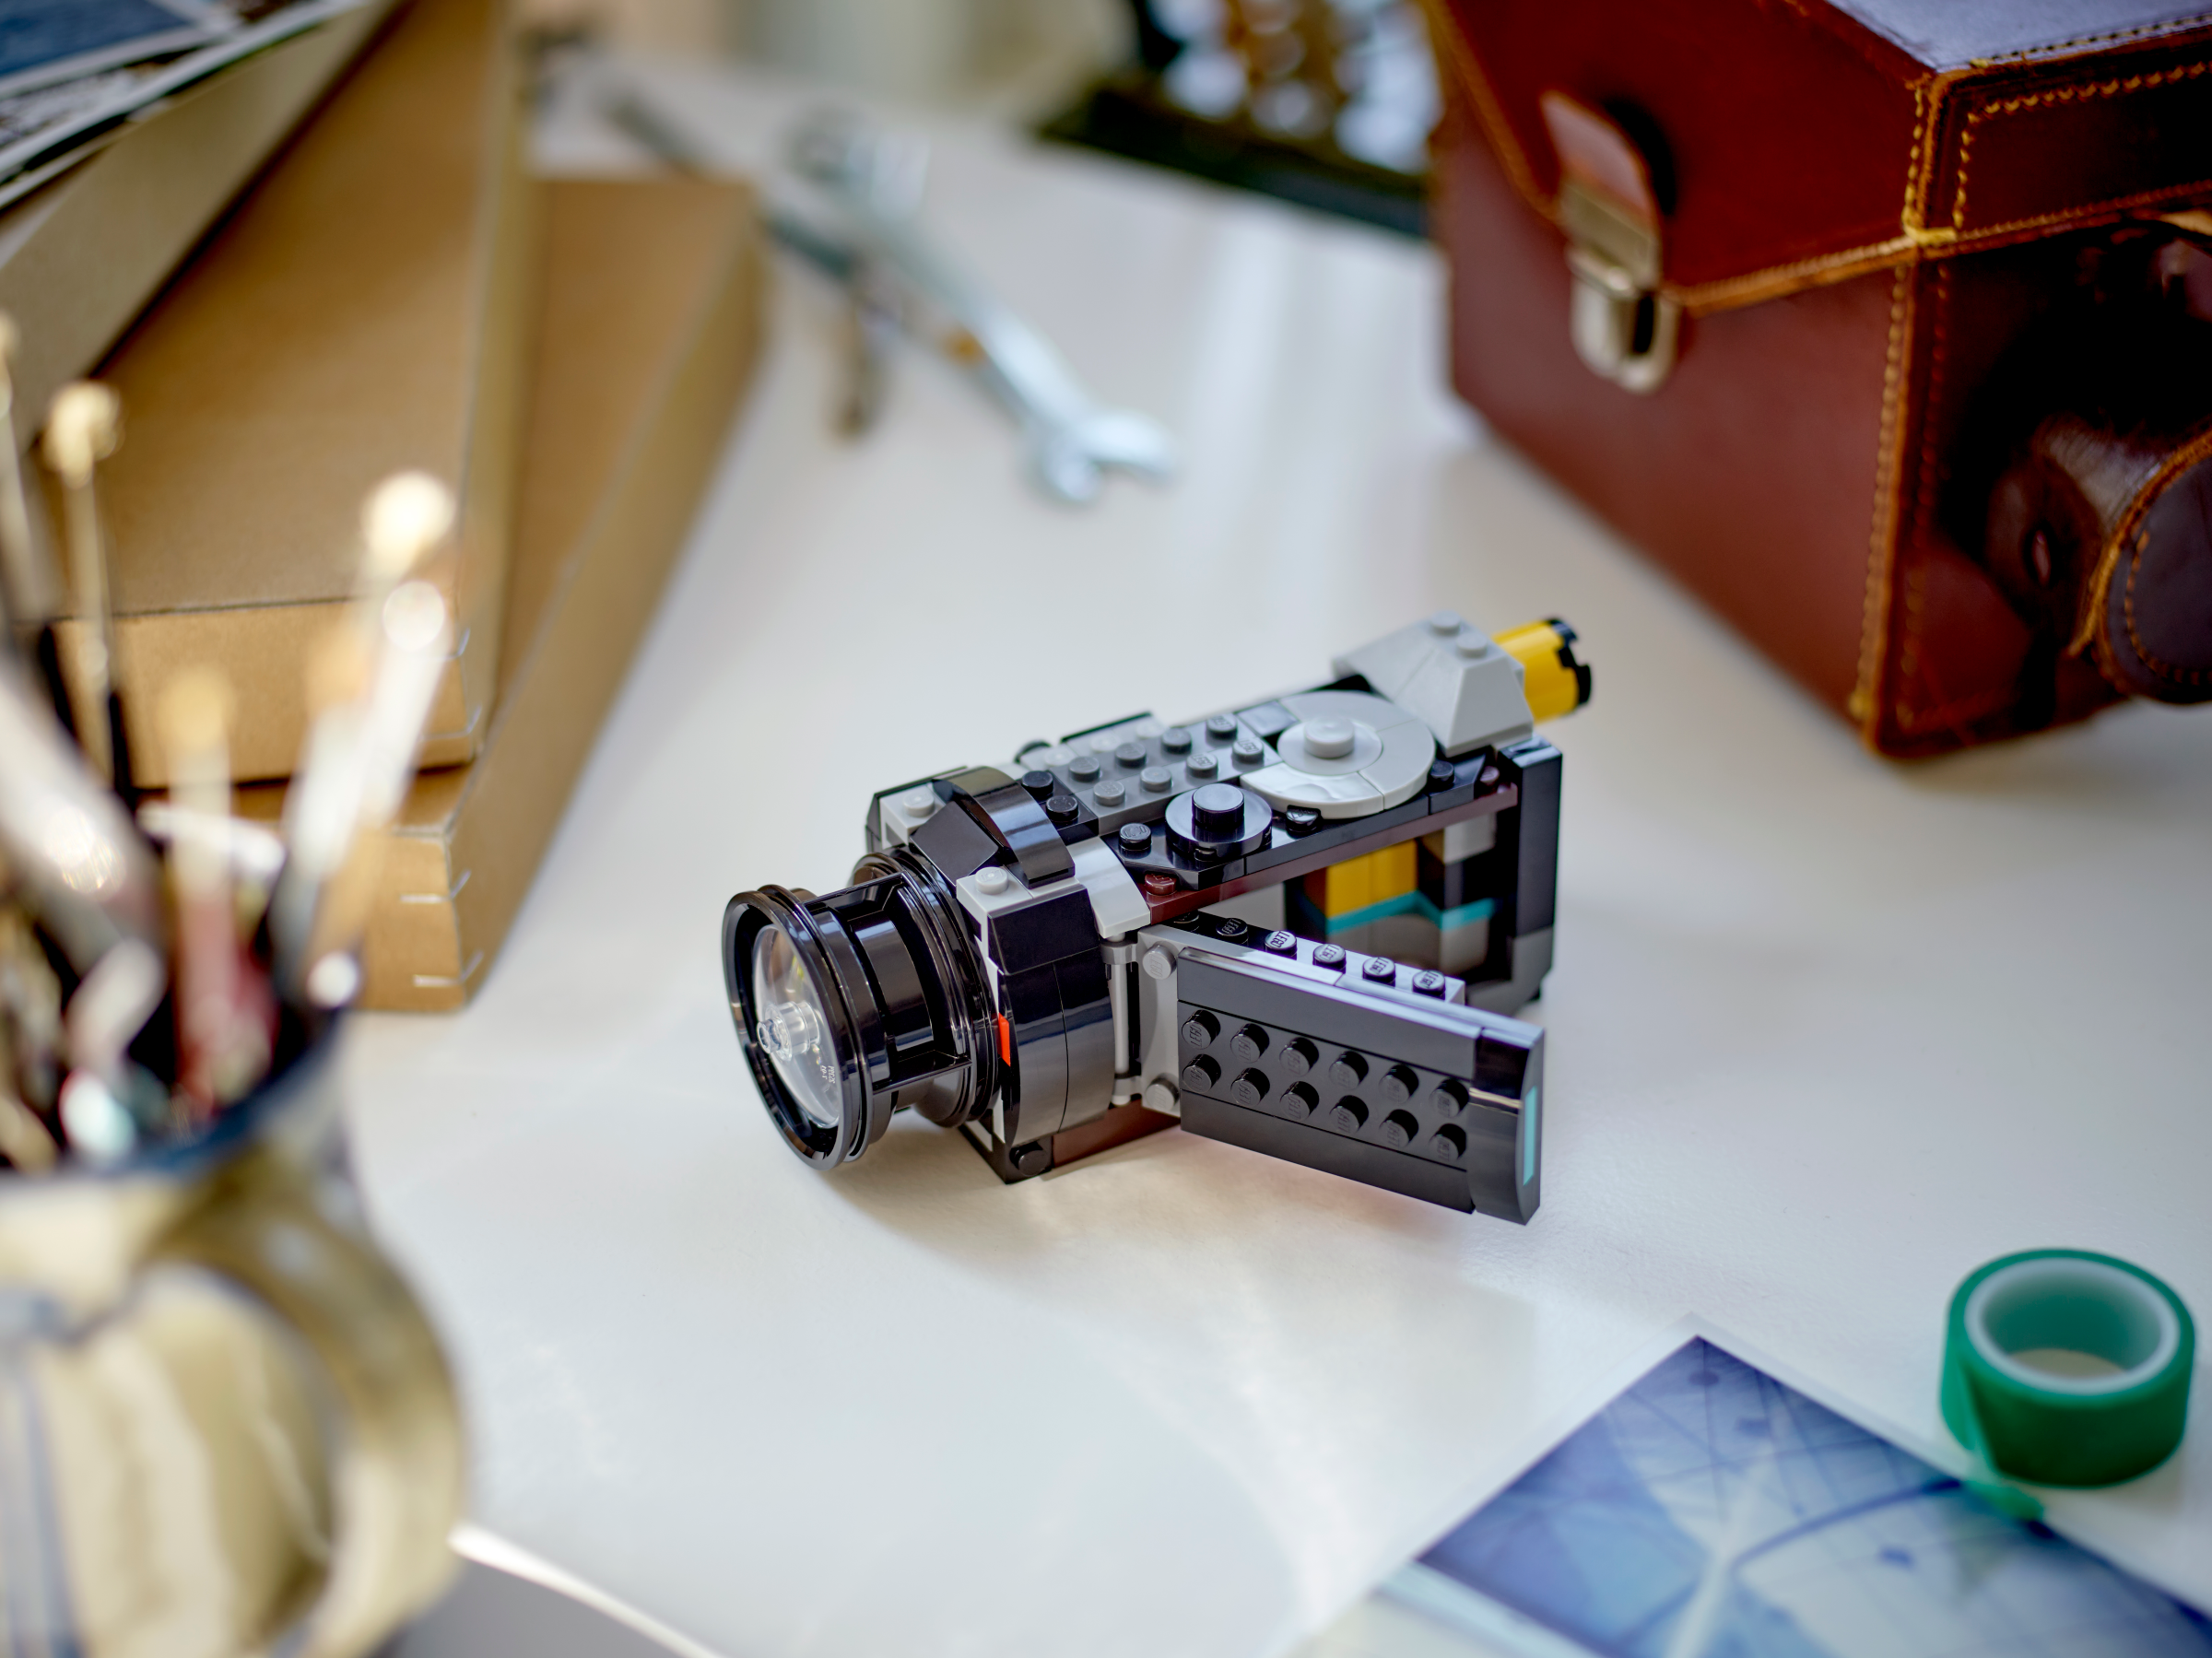 L'appareil photo retro Lego creator 31147 - La Grande Récré